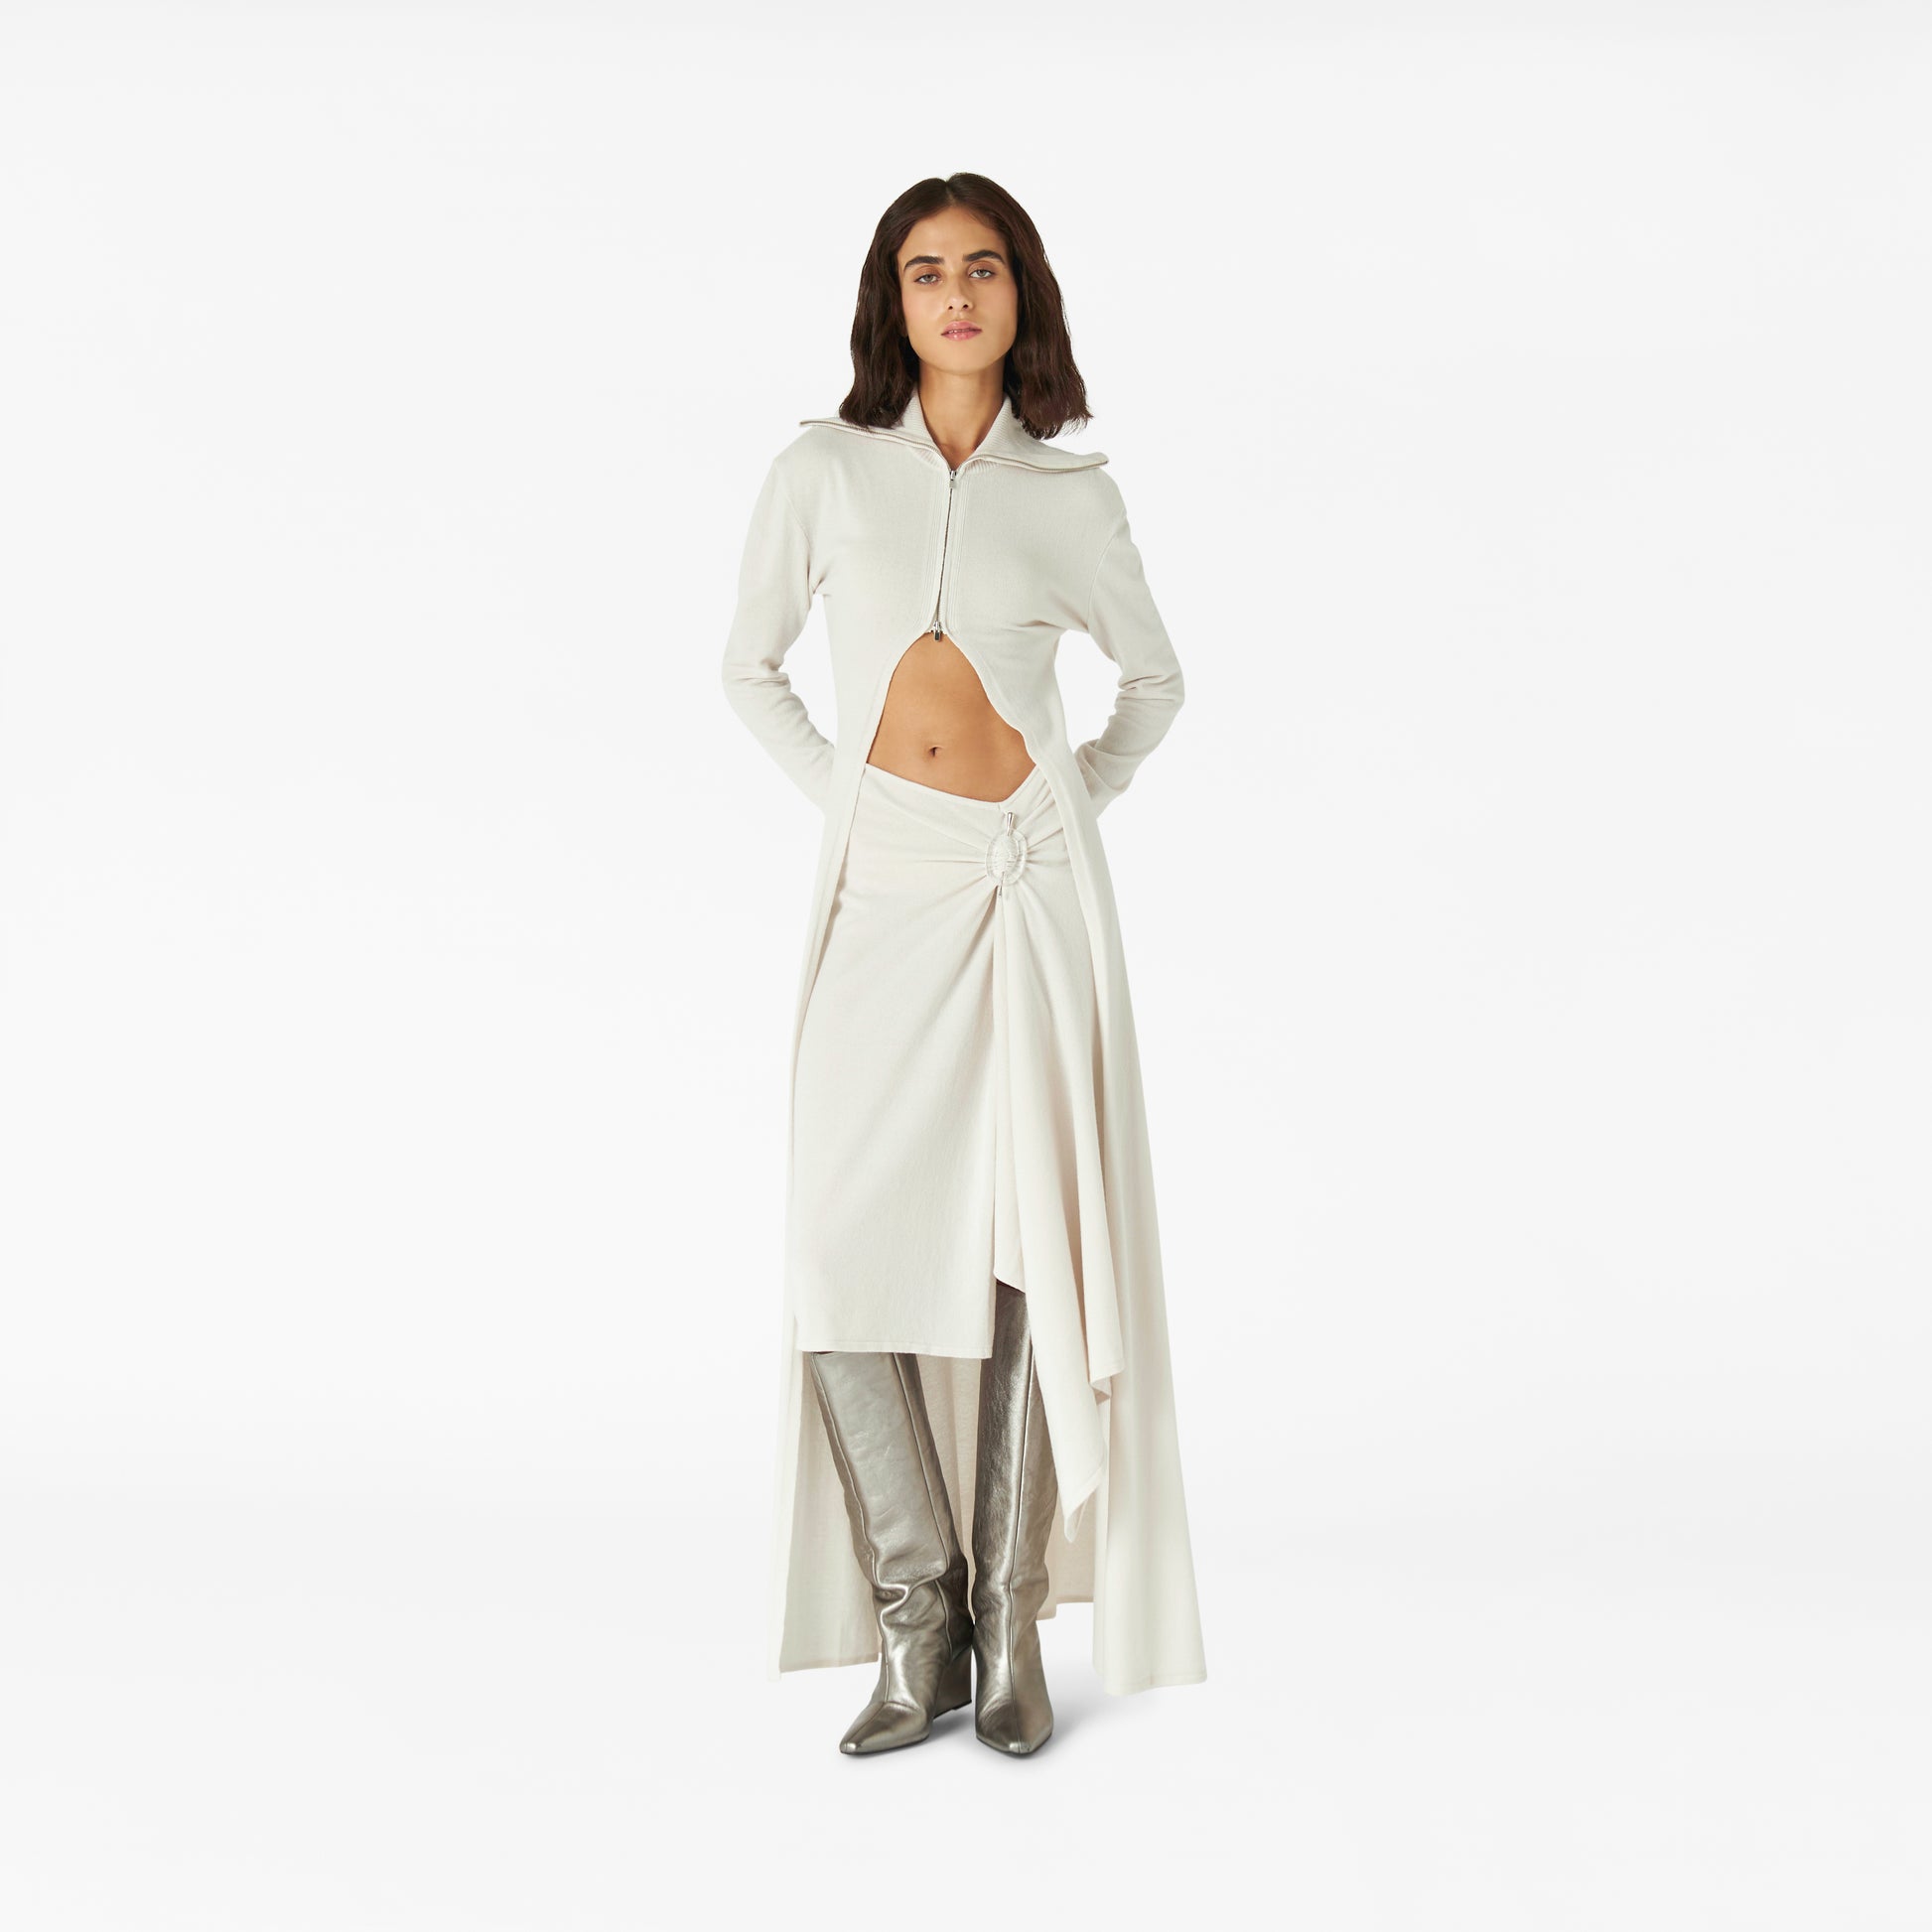 Healing Crystal Skirt in winter white | Lara Chamandi